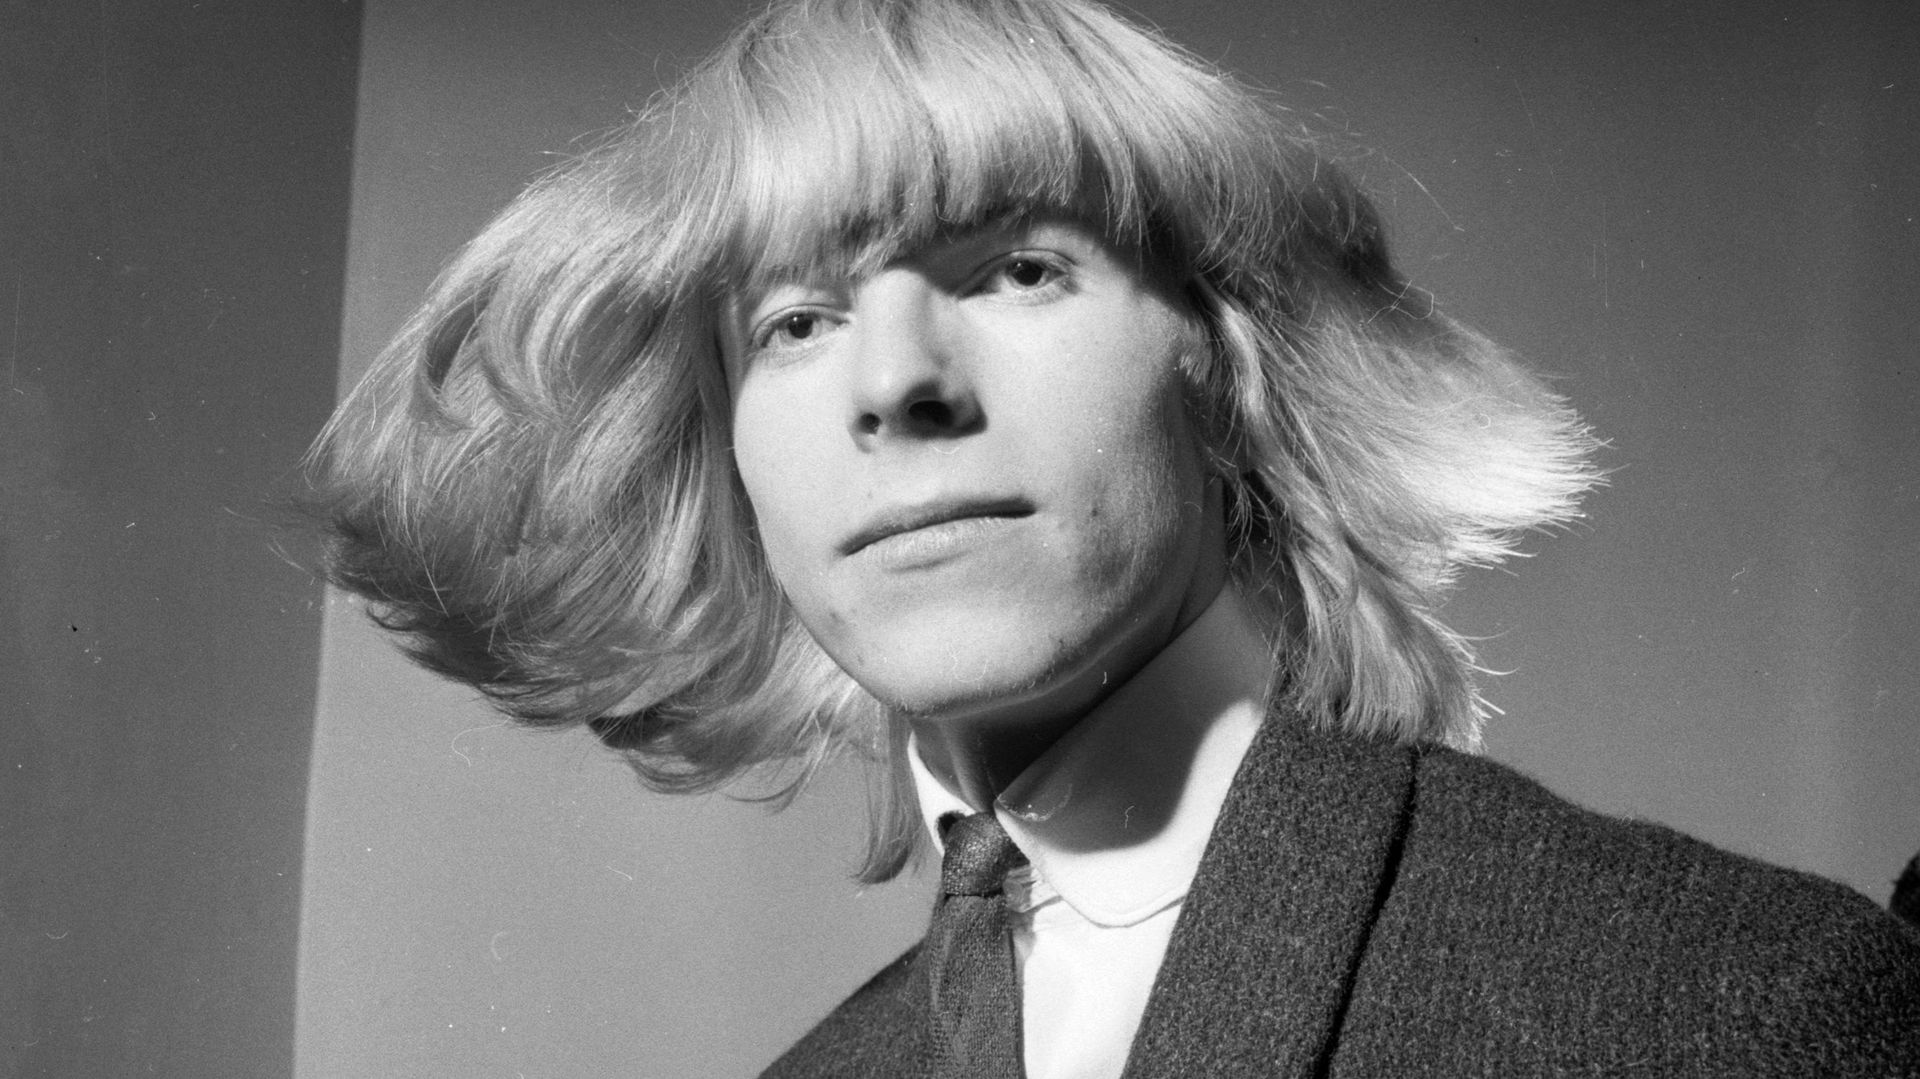 David Bowie : épisode 2 "L'adolescence et le début du succès"